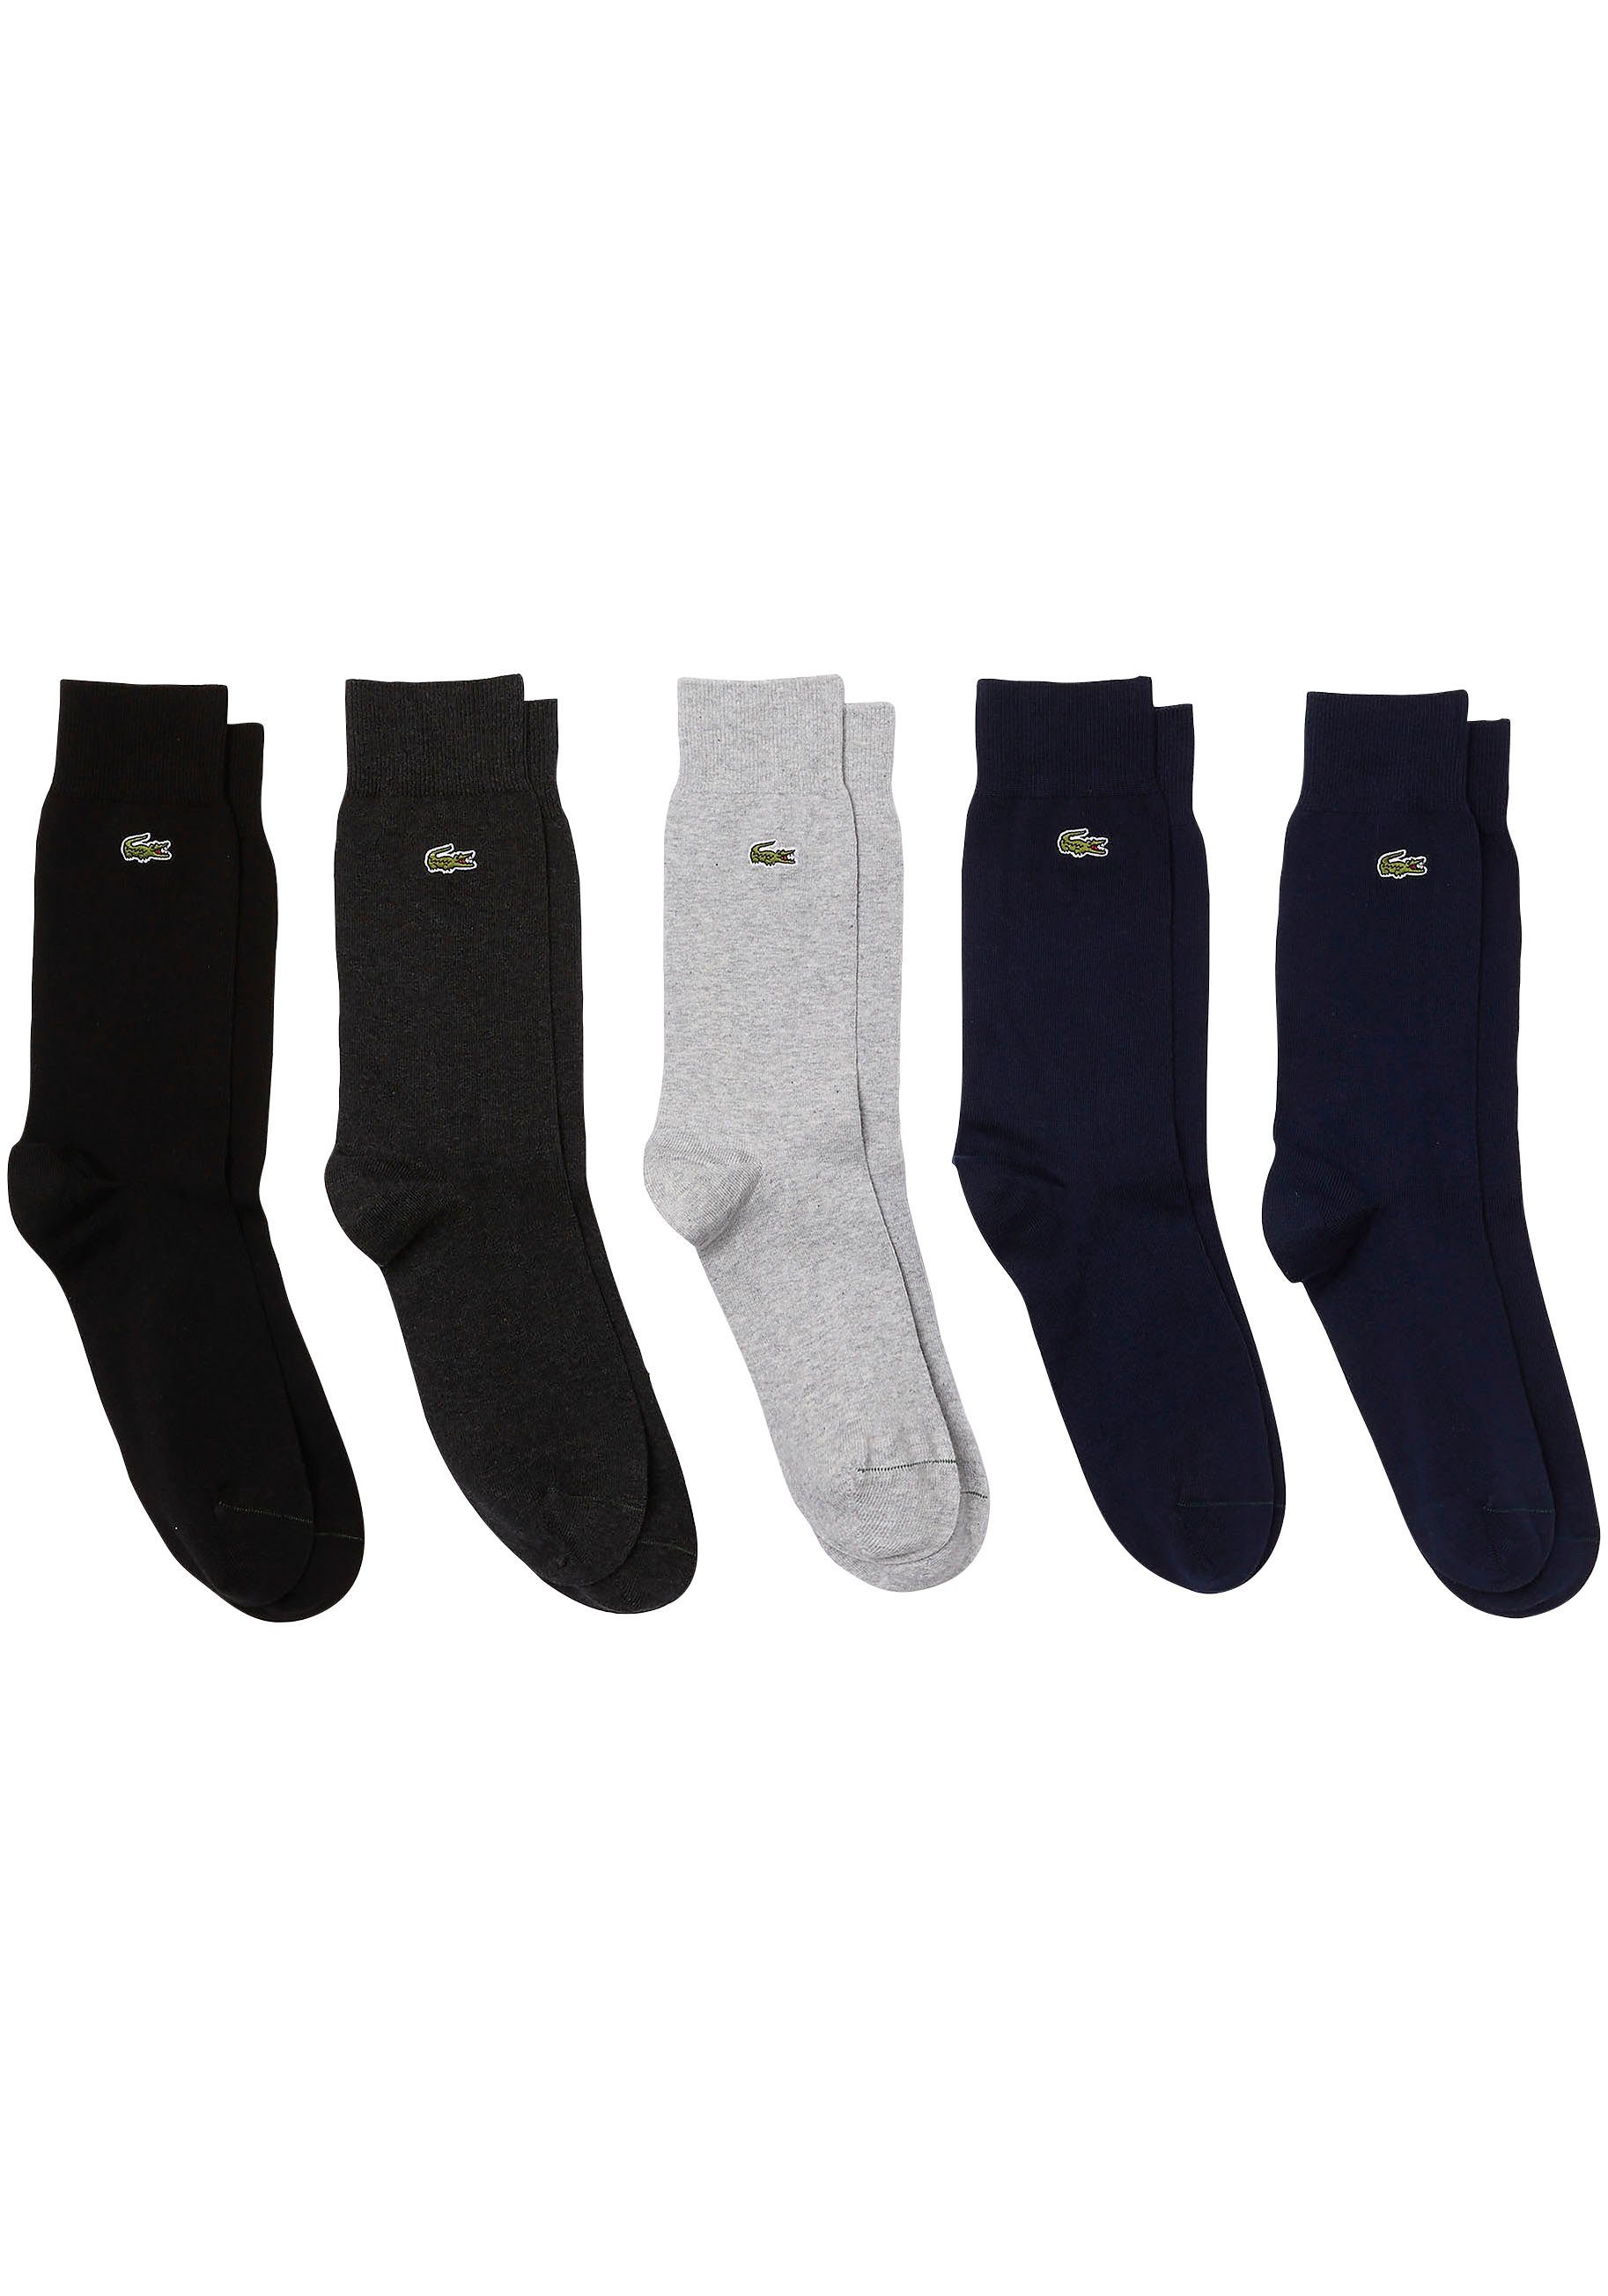 Lacoste Socken, Breiter Ripp-Bund für optimalen Halt